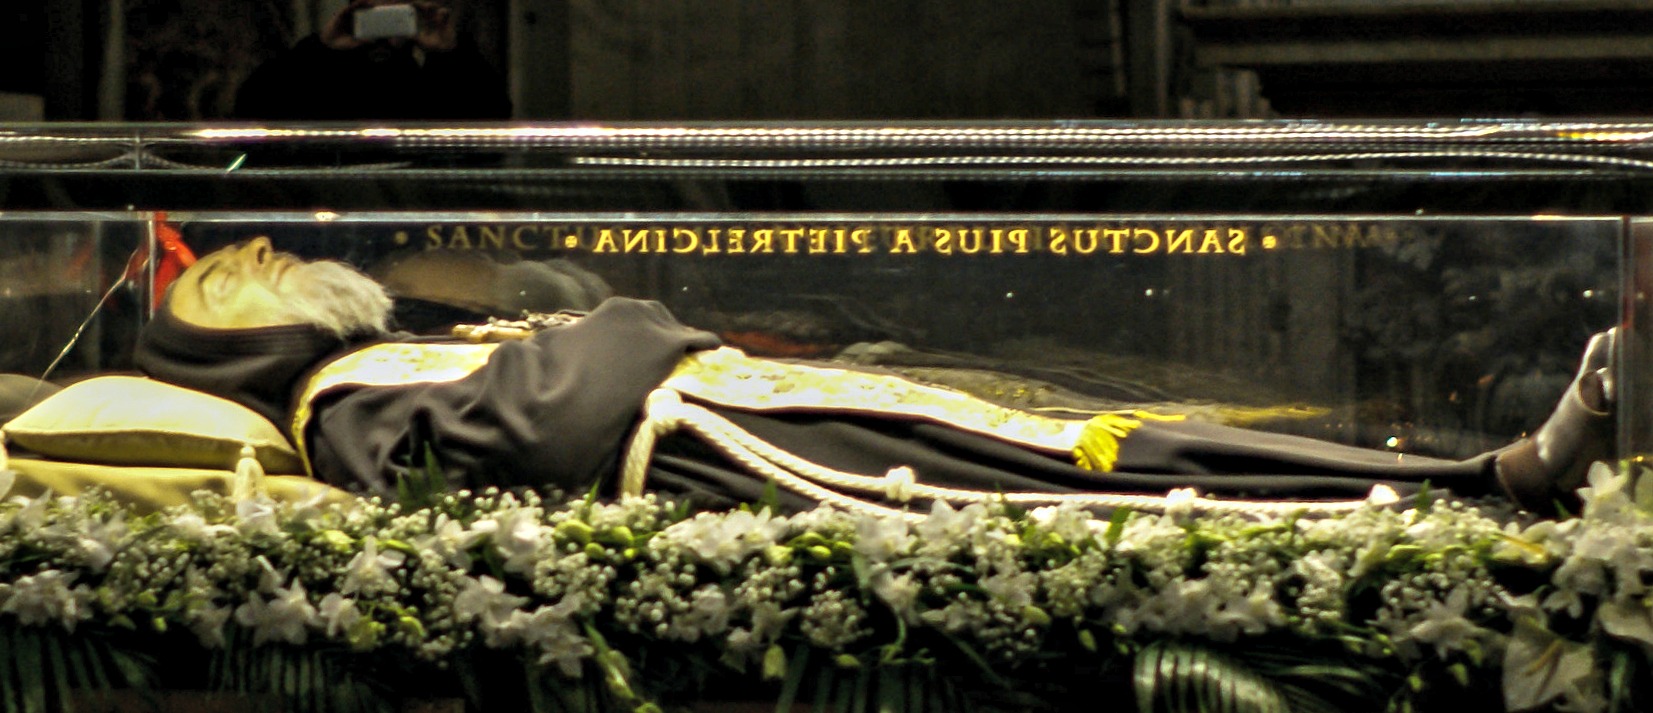 La dépouille de Padre Pio repose à San Giovanni Rotondo (Photo:Alpha 350/Flickr/CC BY 2.0)